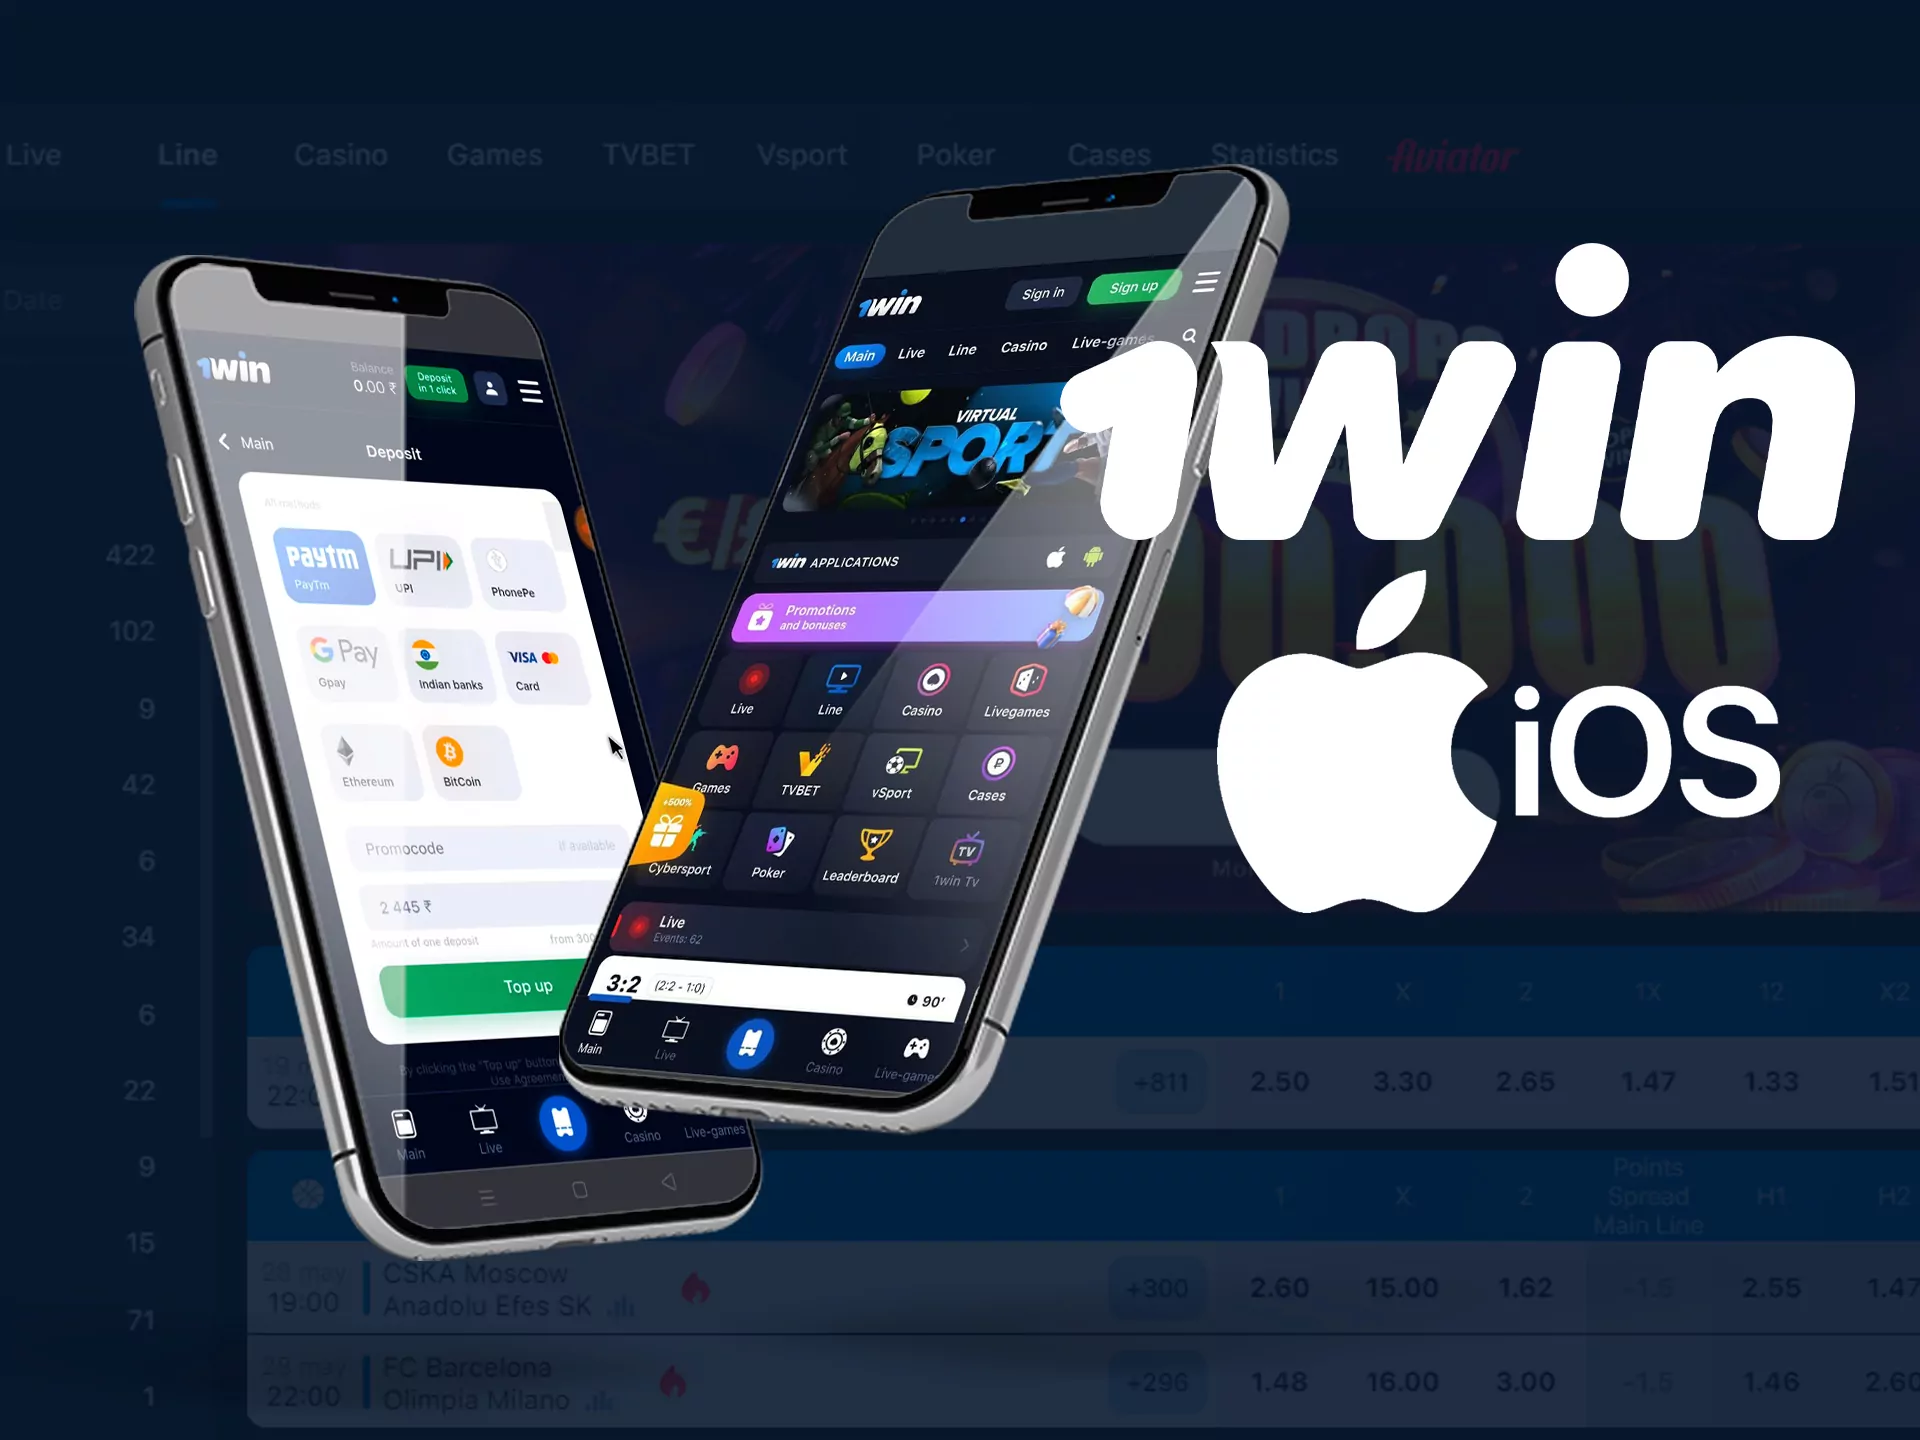 1win अनुप्रयोग के लिए iPhone